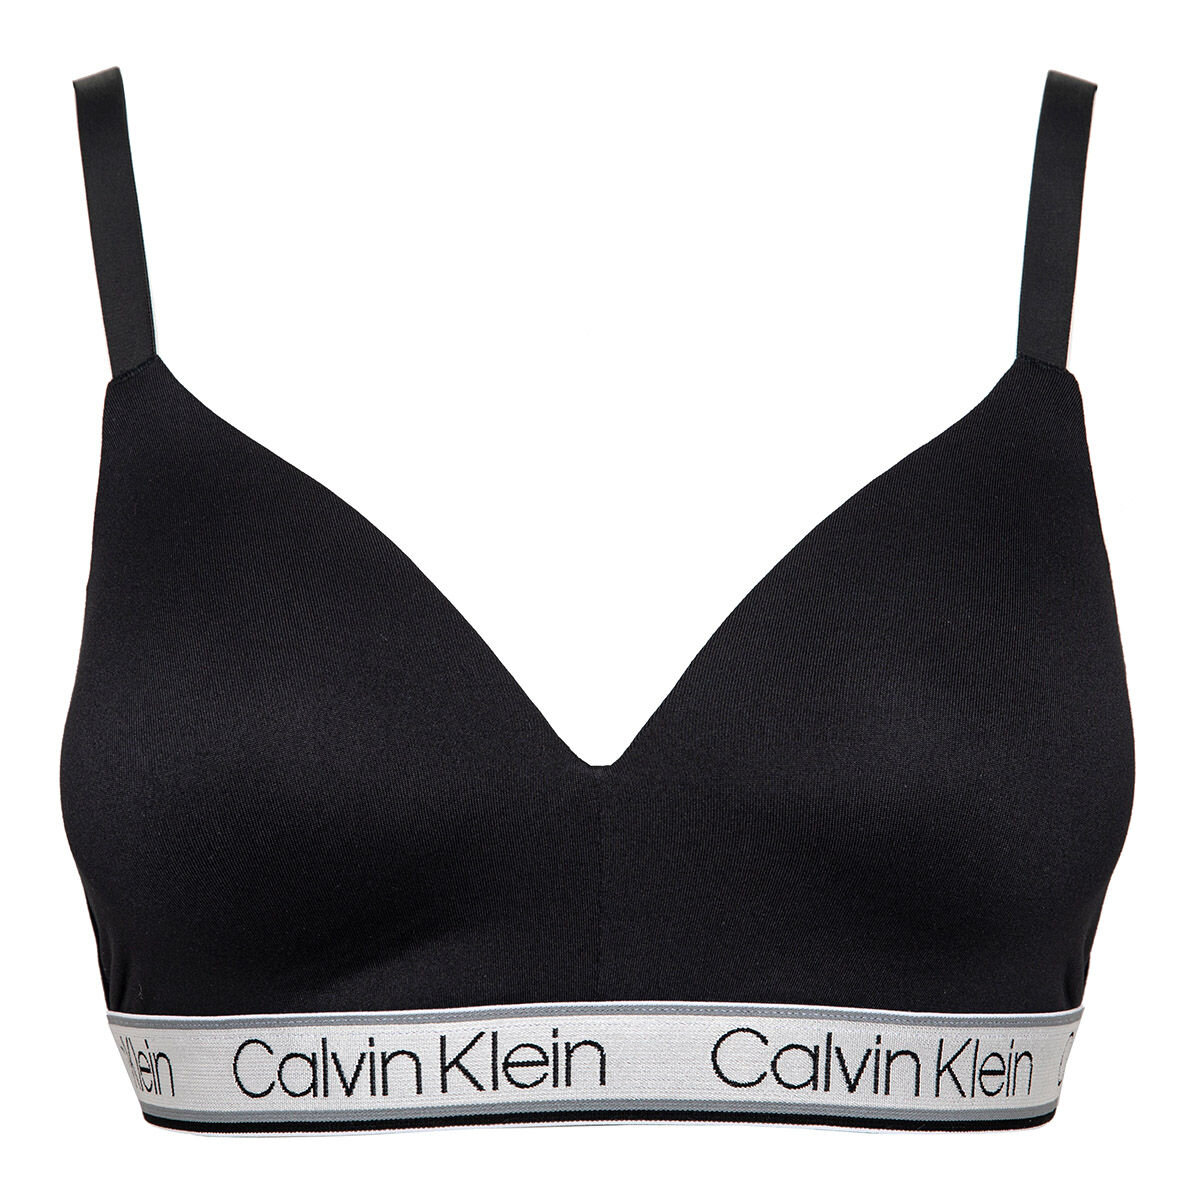 Costco Calvin Klein Calvin Klein Ladies' Wirefree Bra, 2-pack 21.99